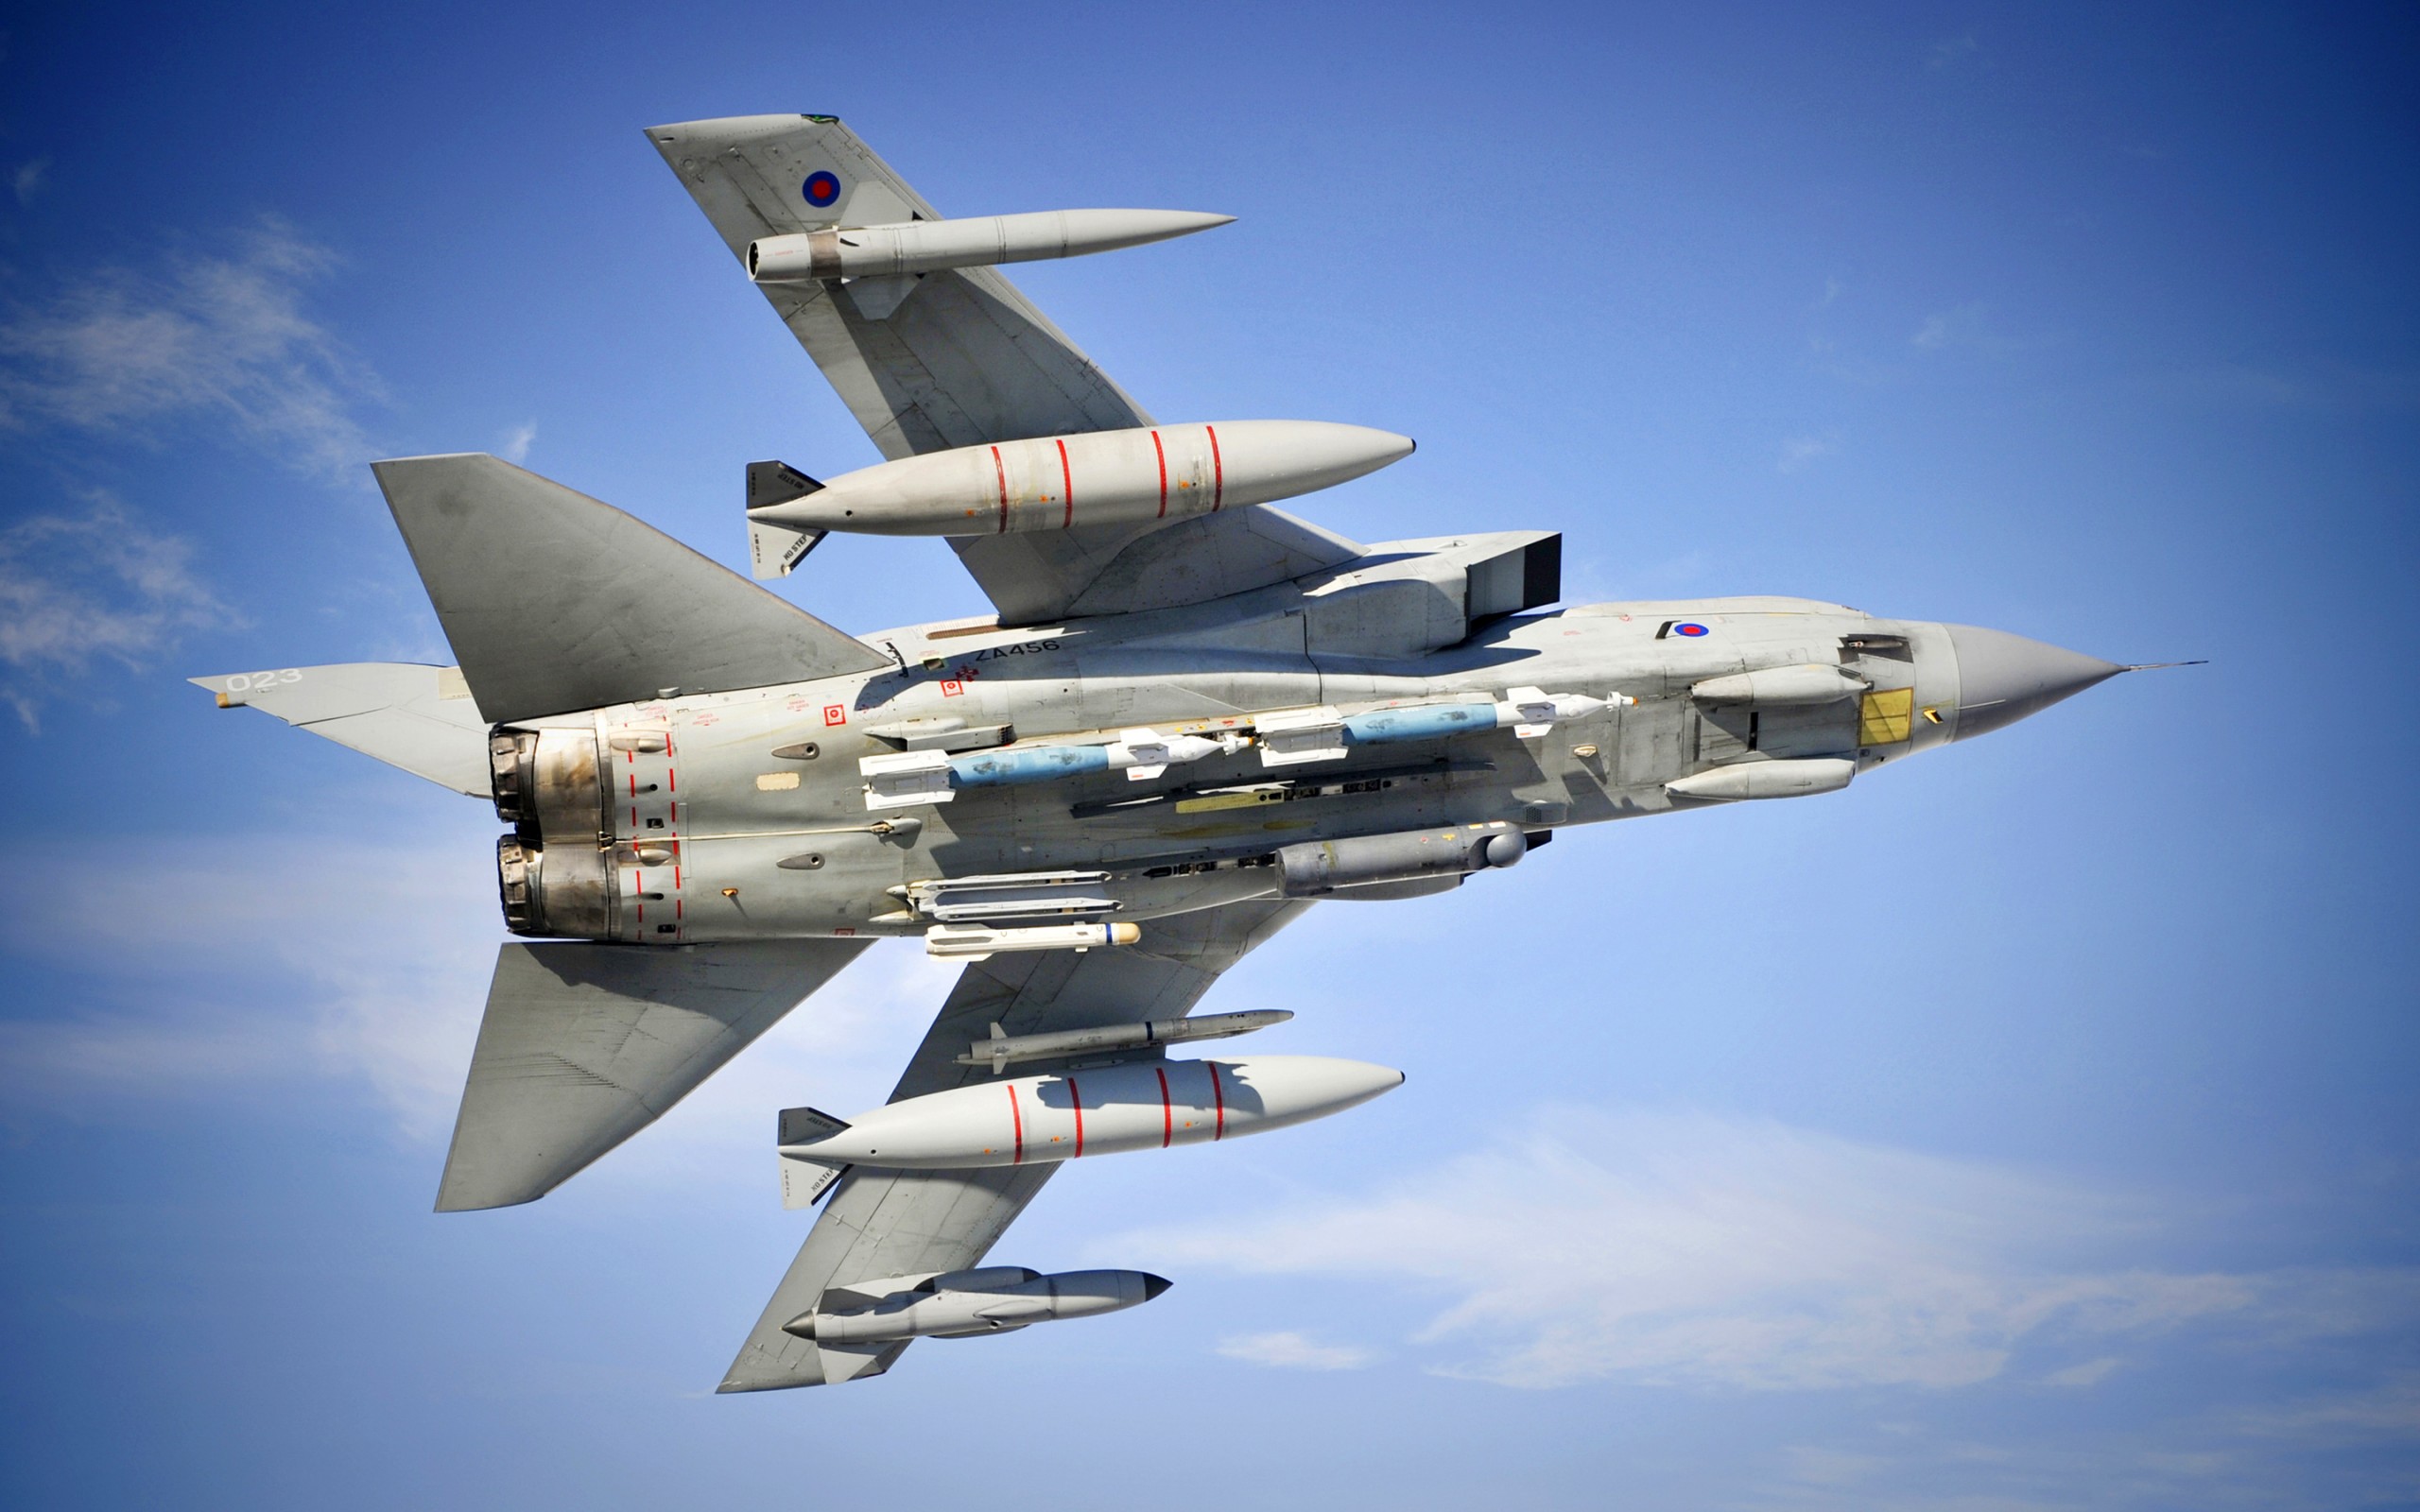 panavia_tornado_combat_aircraft-2560x1600.jpg